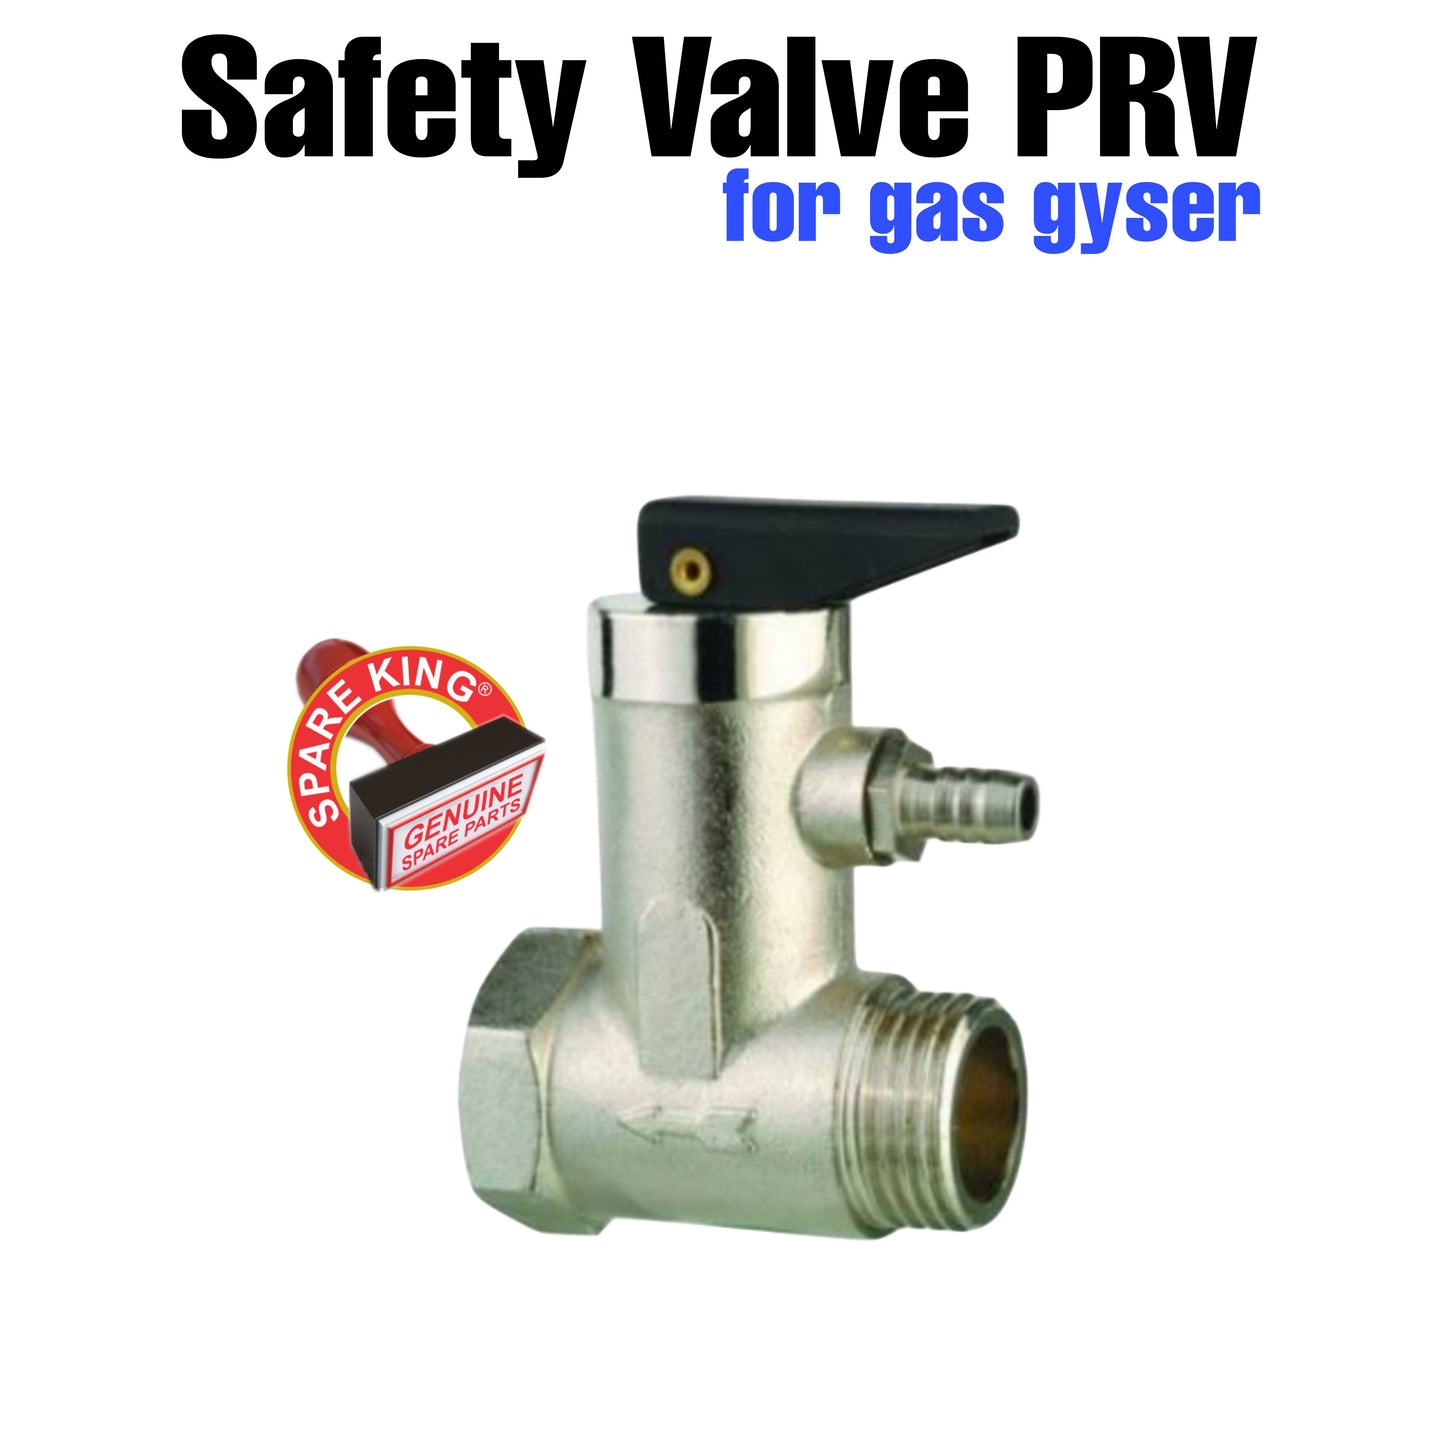 Safety Valve PRV for gas gyser